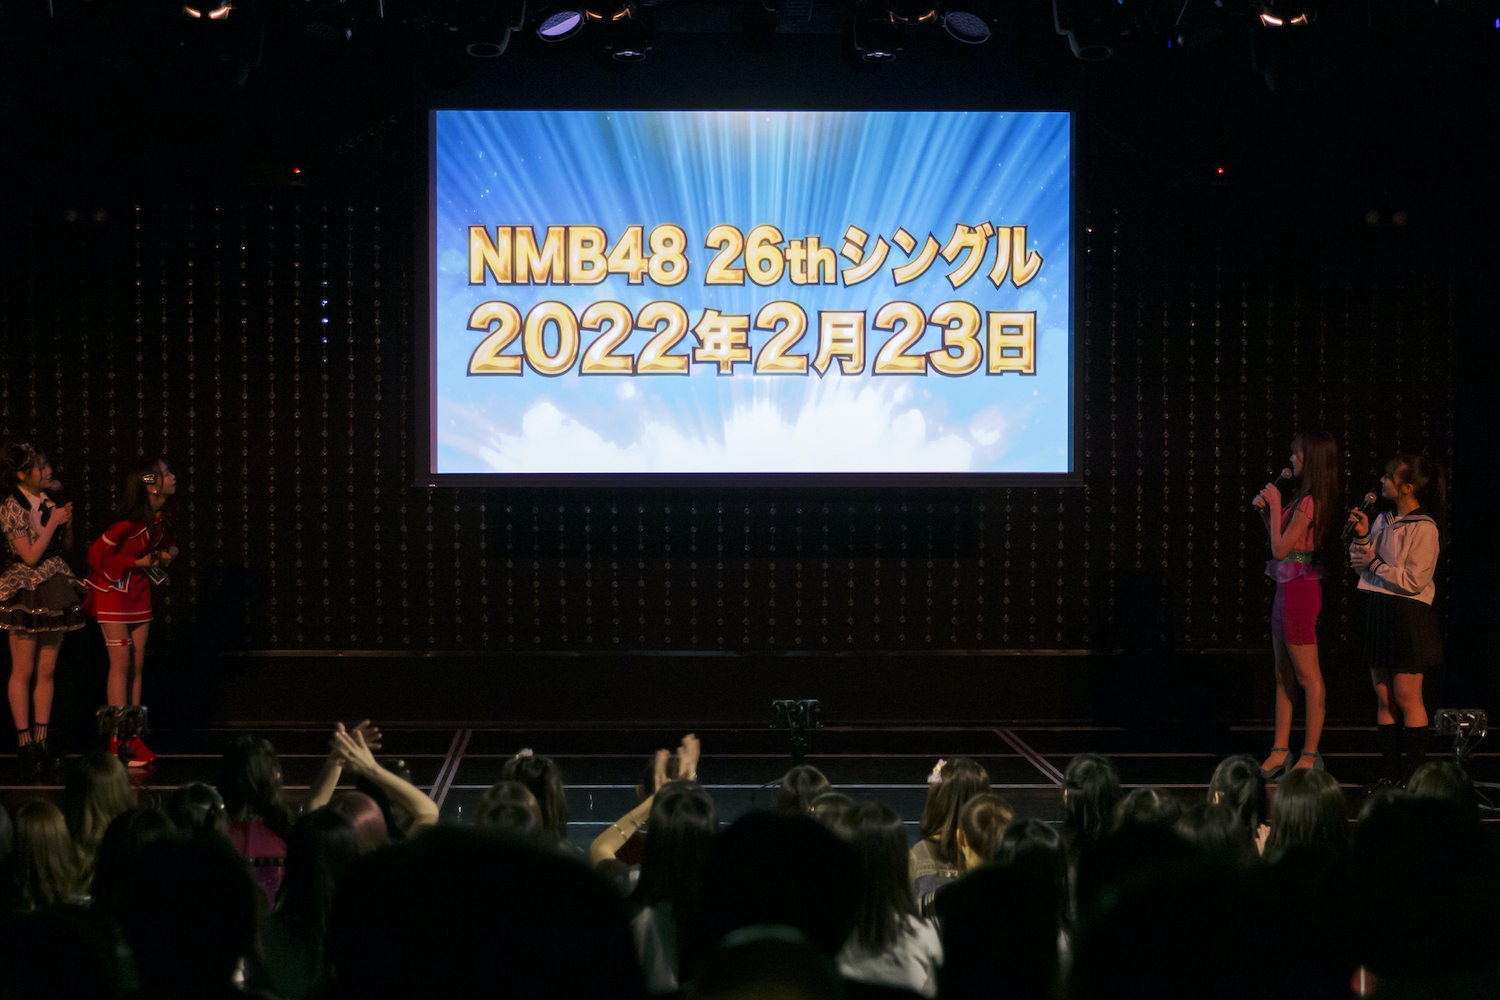 NMB48の26thシングルの発売日が2月23日(水)に決定